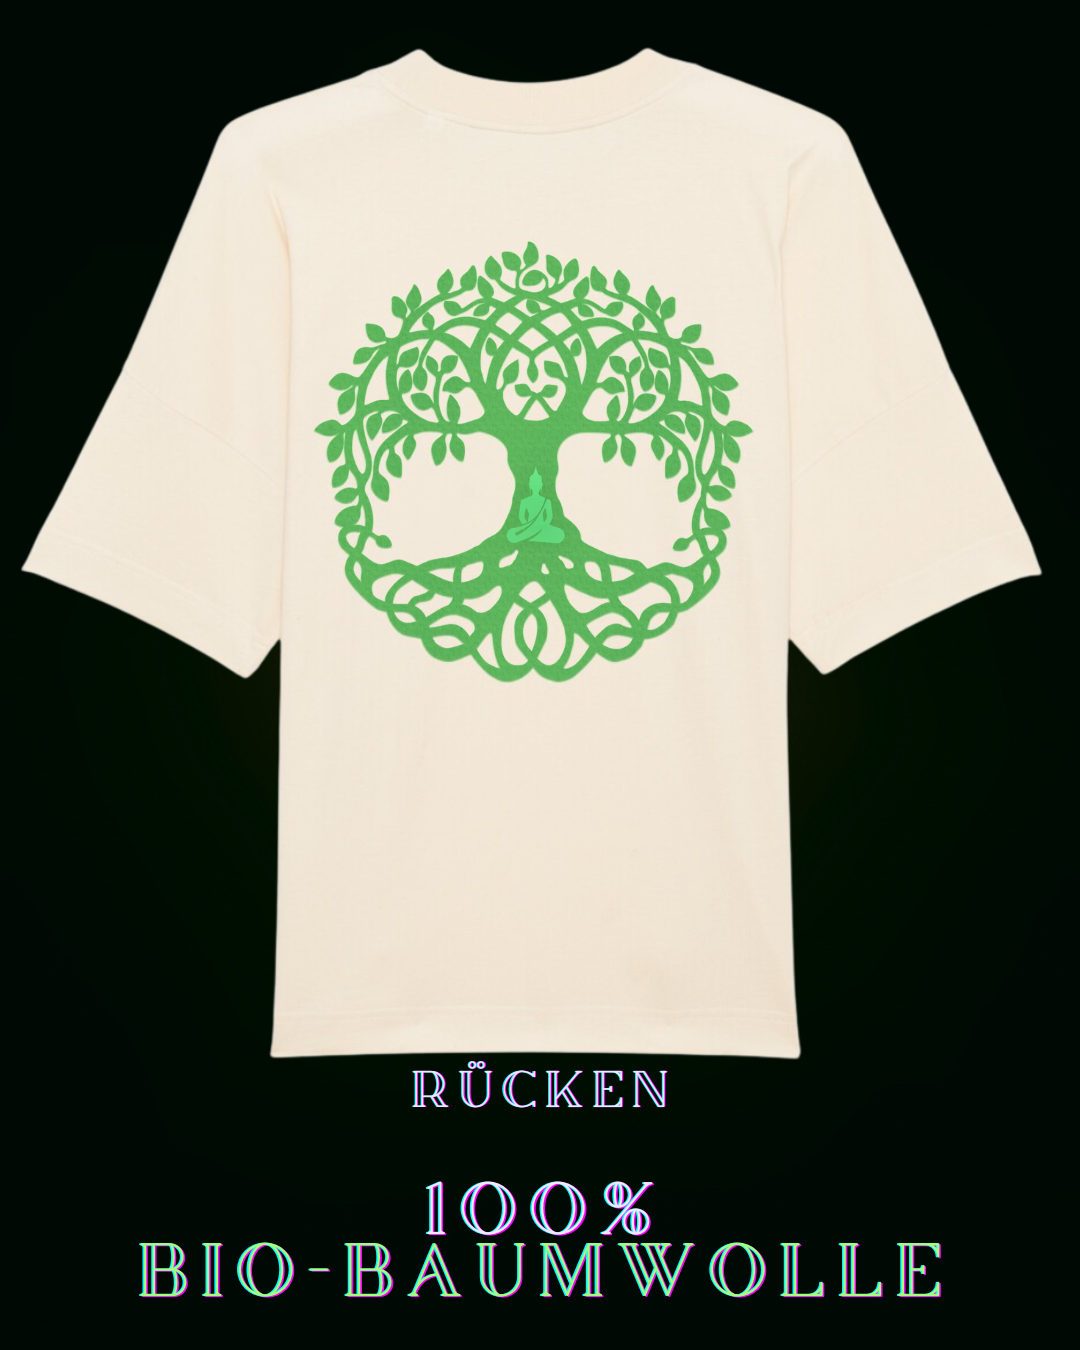 100% Bio-Baumwoll-T-Shirt im natürlichen Baum des Lebens Stil für eine nachhaltige Welt | Baum des Lebens Symbol mit meditierendem Menschen am Stamm auf Rückseite & dezentem ALPHA-i-OMEGA symbol mittig am Herzen